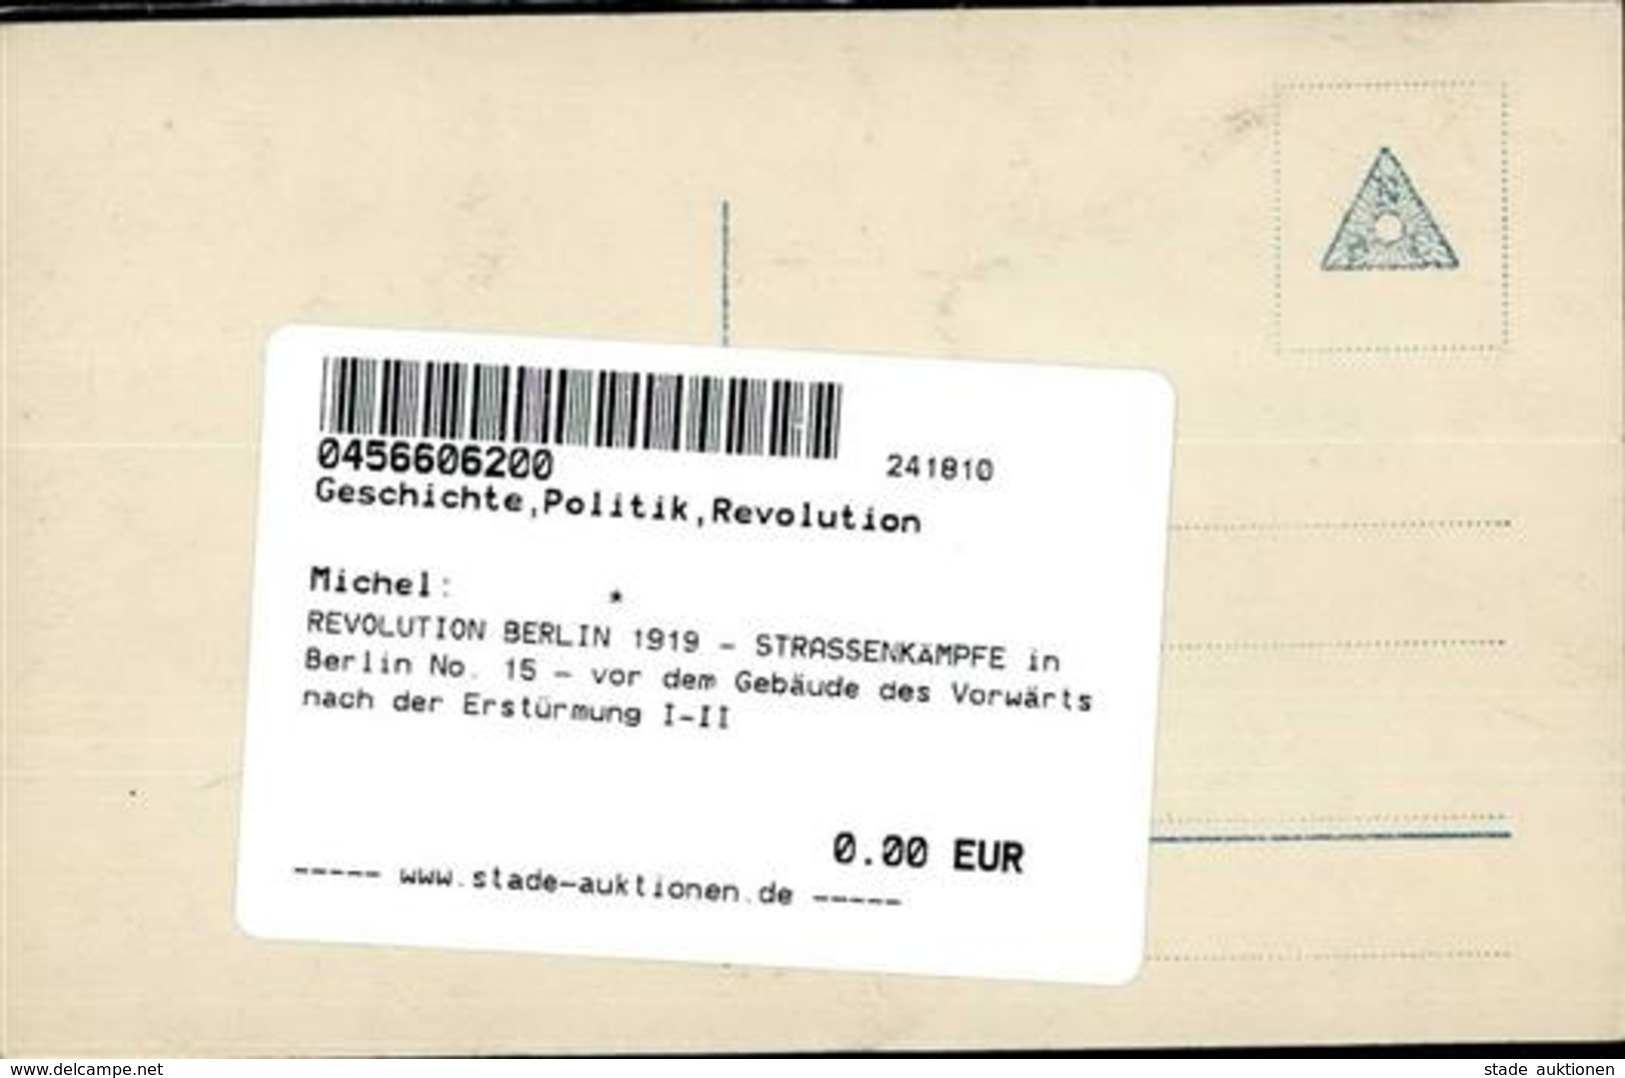 REVOLUTION BERLIN 1919 - STRASSENKÄMPFE In Berlin No. 15 - Vor Dem Gebäude Des Vorwärts Nach Der Erstürmung I-II - Warships